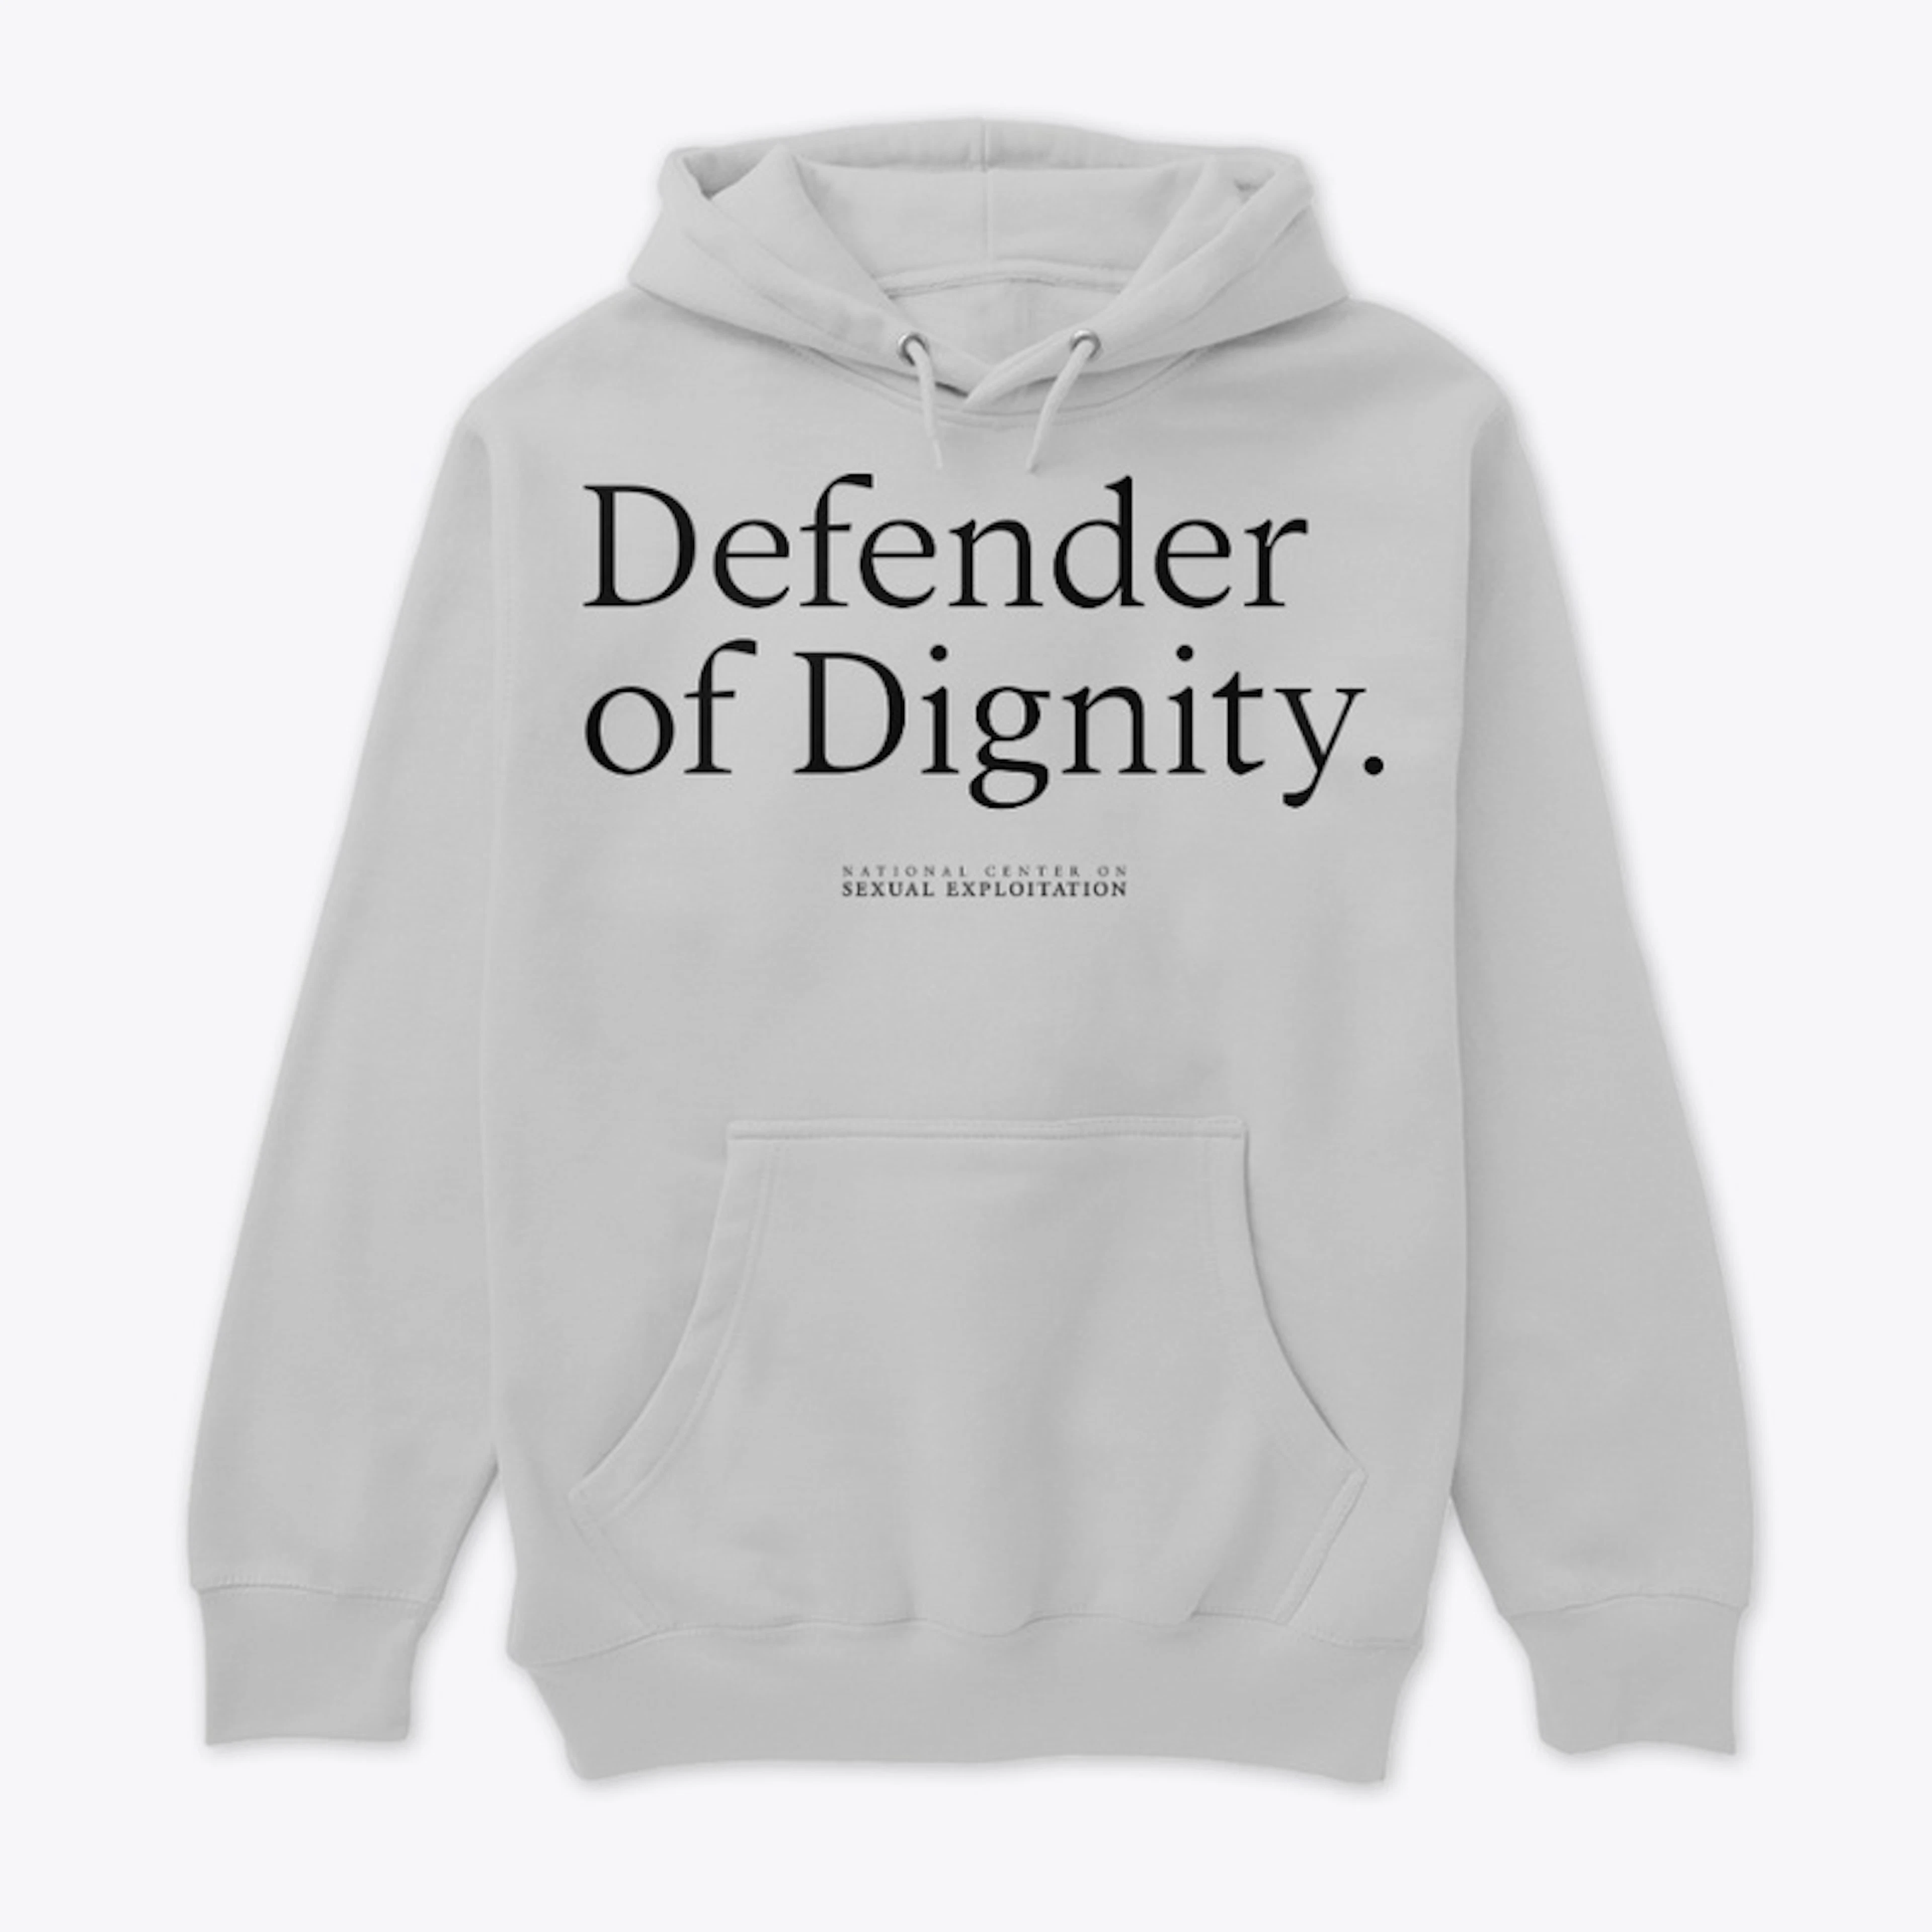 Dignity Defender - Grey